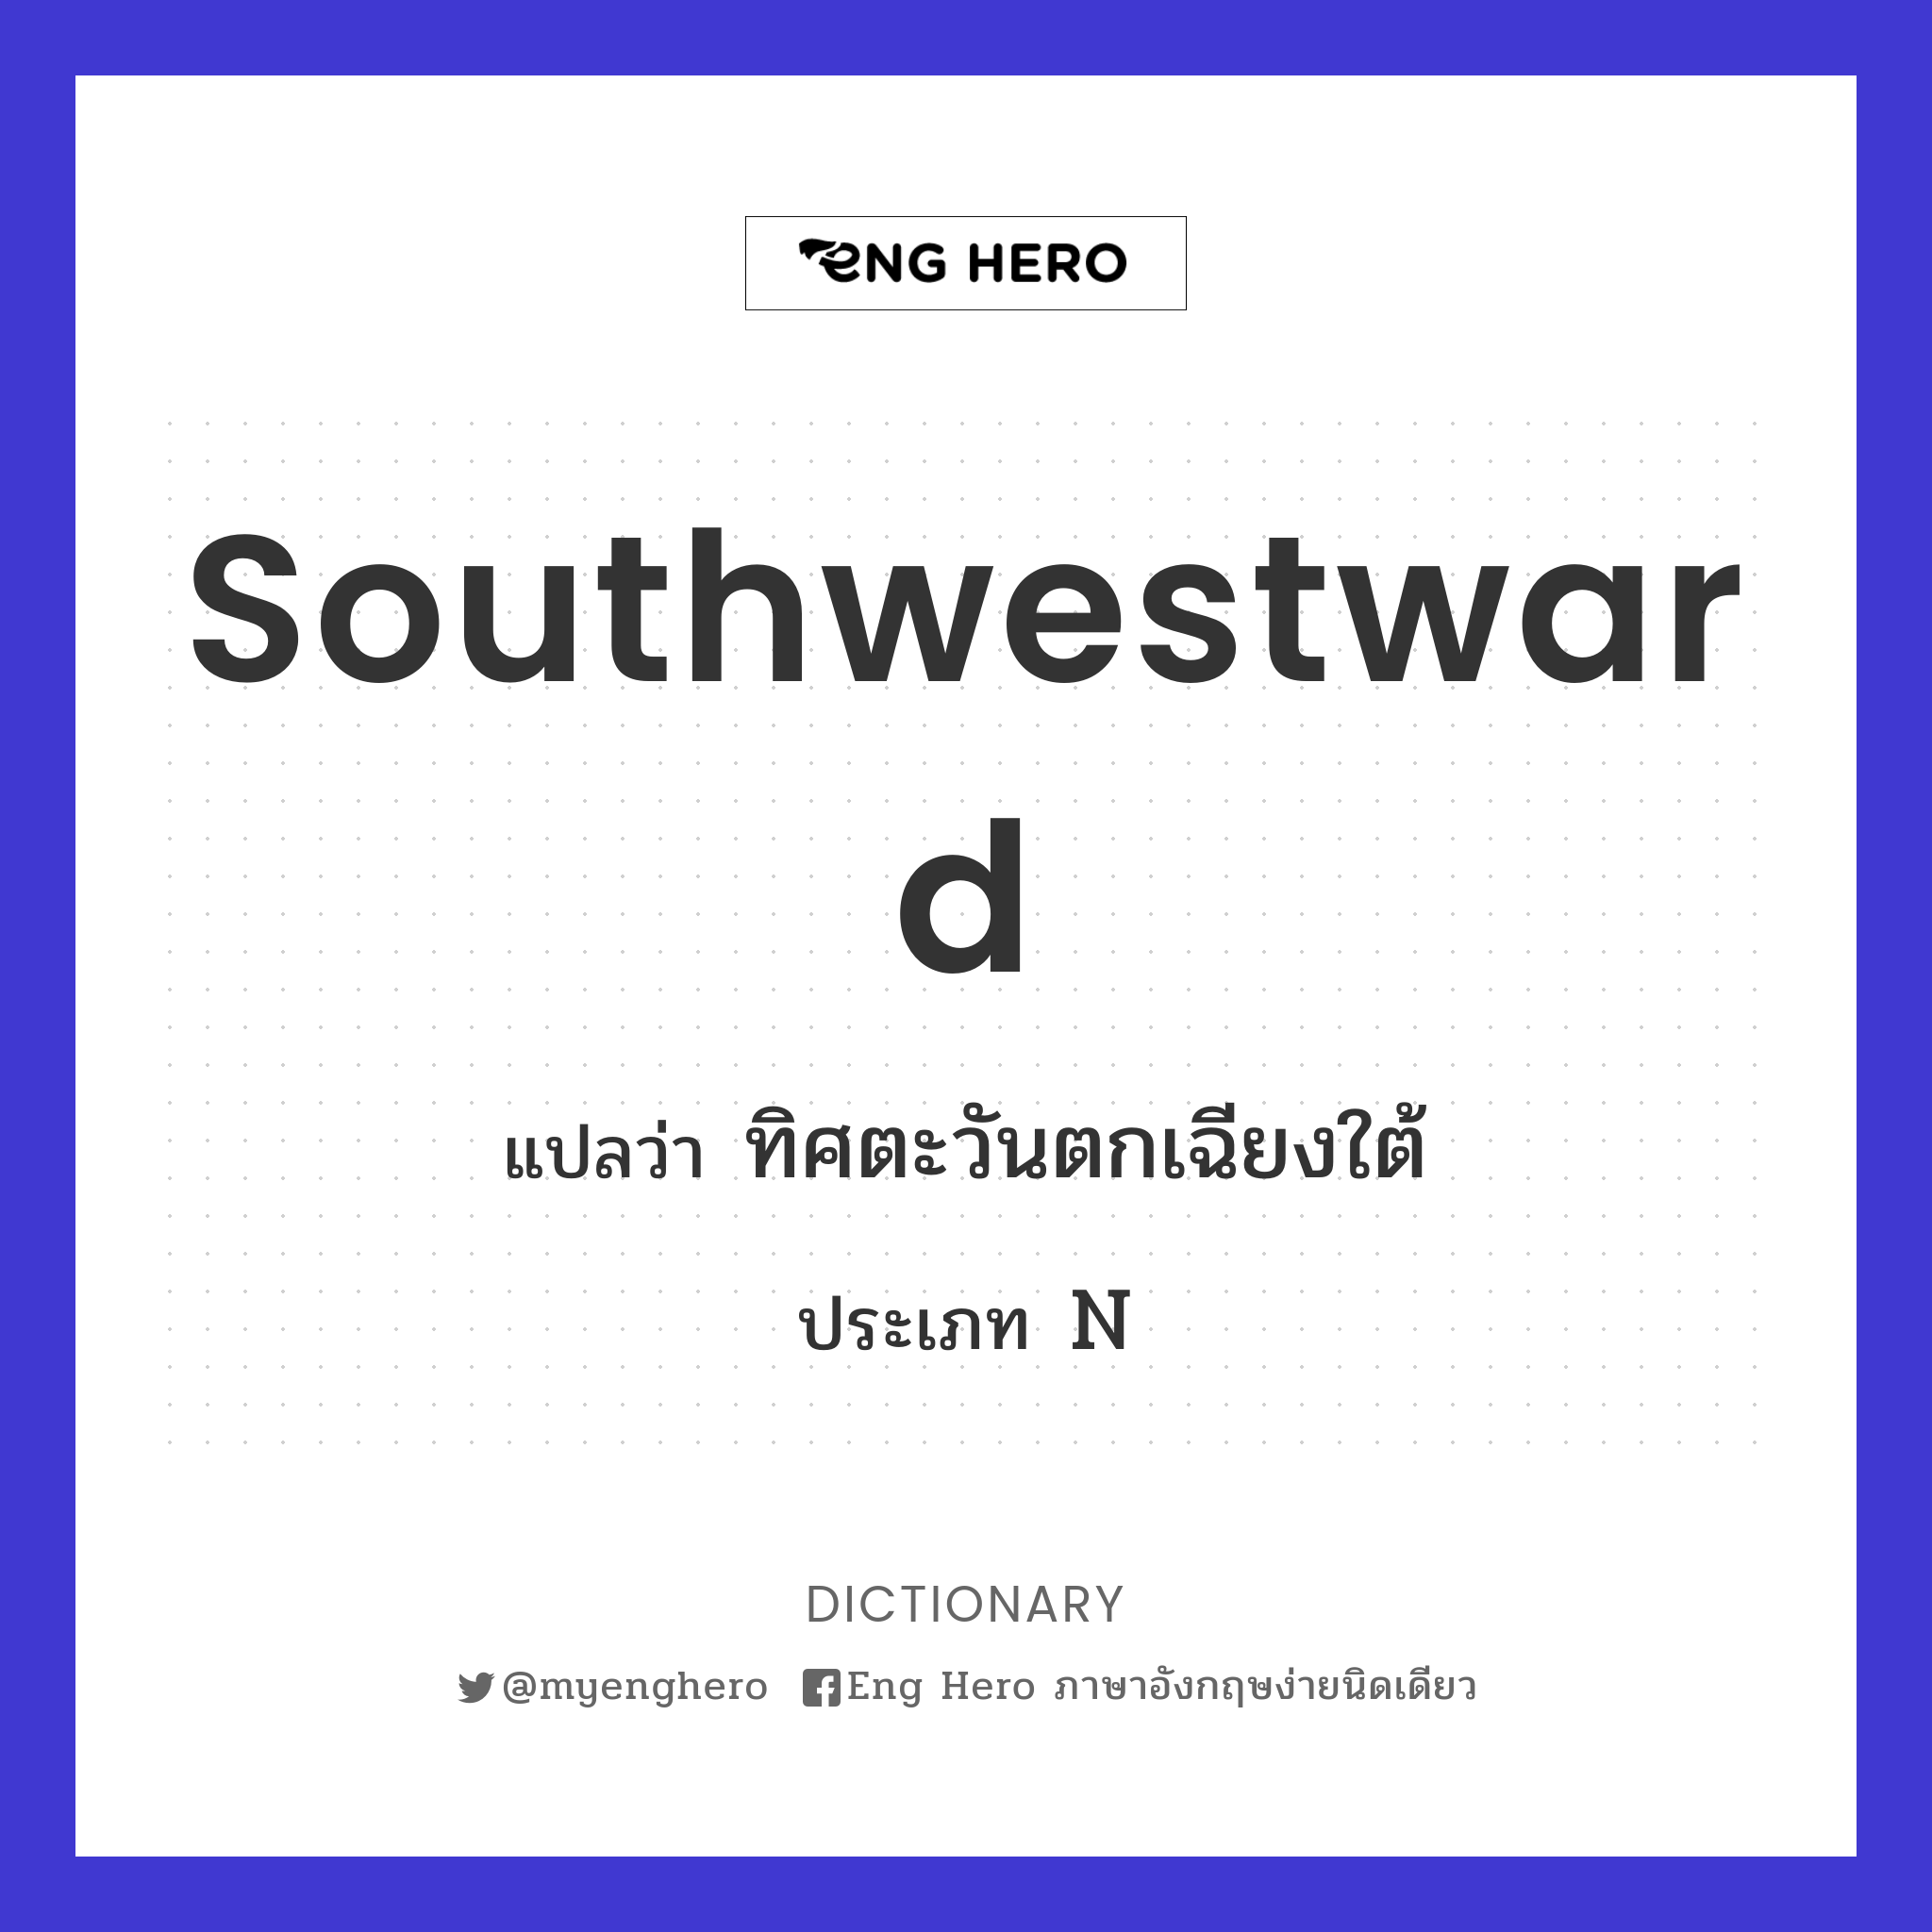 southwestward